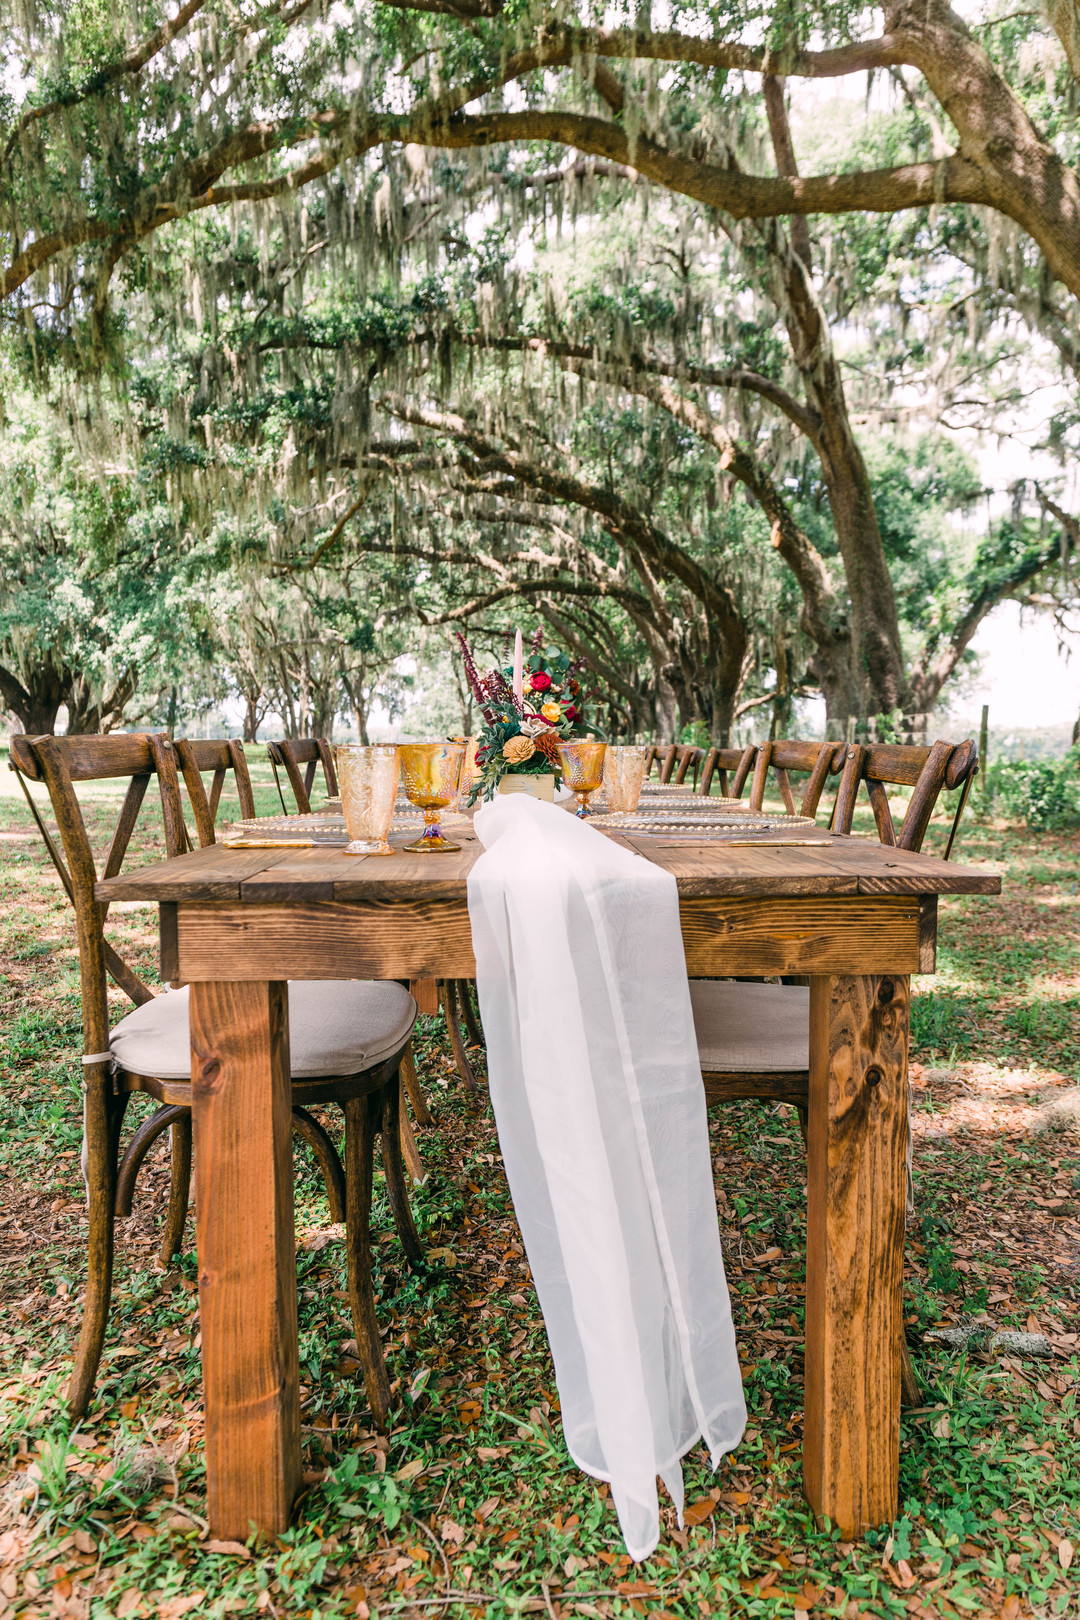 Vintage Outdoor Rustic Wedding Table